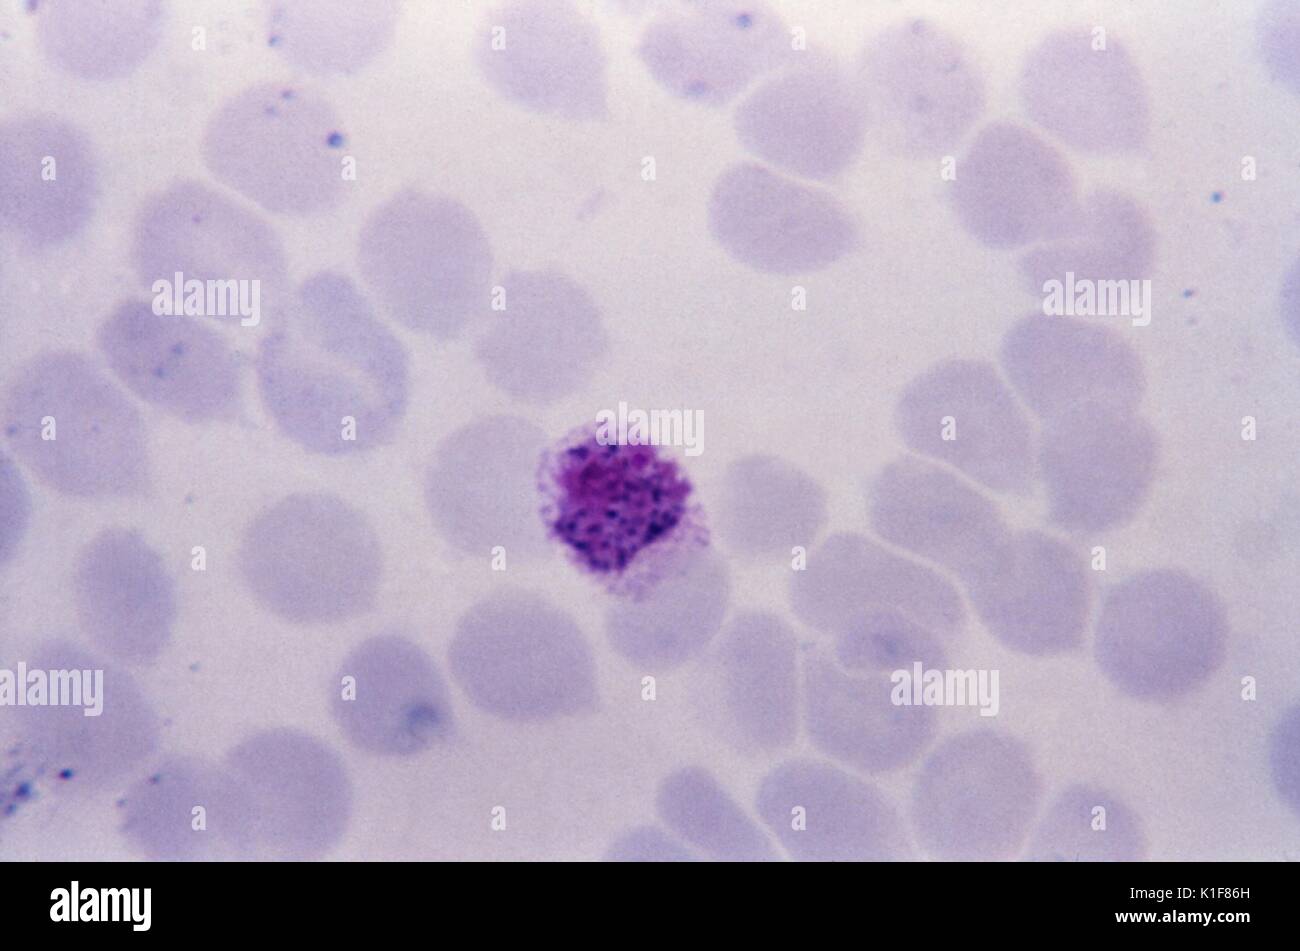 Diese thin film Giemsa angefärbt Schliffbild zeigt eine Plasmodium vivax microgametocyte. Die Gametocytes, männlich (microgametocytes) und weiblich (macrogametocytes), eine Anopheles-mücke während seiner Blut Mahlzeit eingenommen wird. Die Parasiten? Vermehrung im moskito als sporogonic Zyklus bekannt. Bild mit freundlicher Genehmigung von CDC/Dr. Melvin, Steven Glenn, Labor Schulung und Beratung Division, 1973. Stockfoto